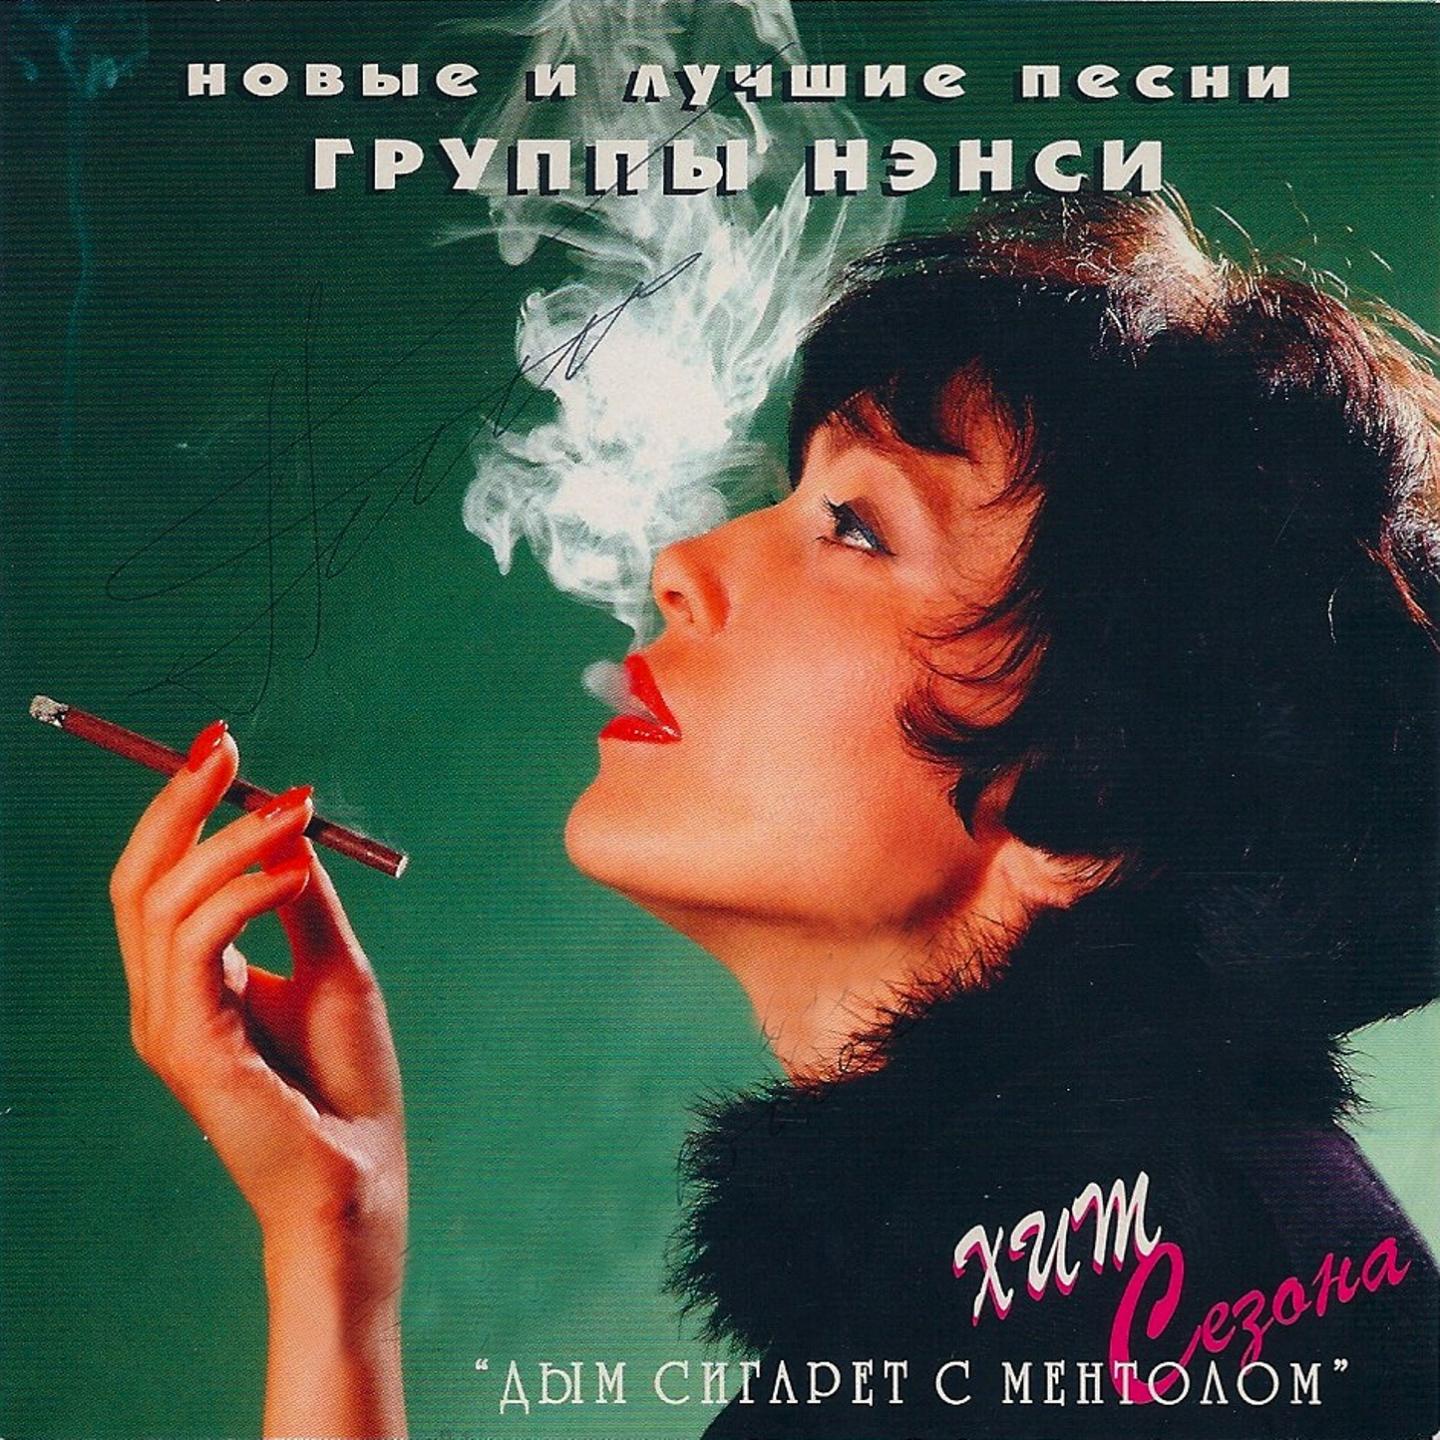 Альбомы хорошей музыки слушать. Ненси дим сигарет з ментолом.